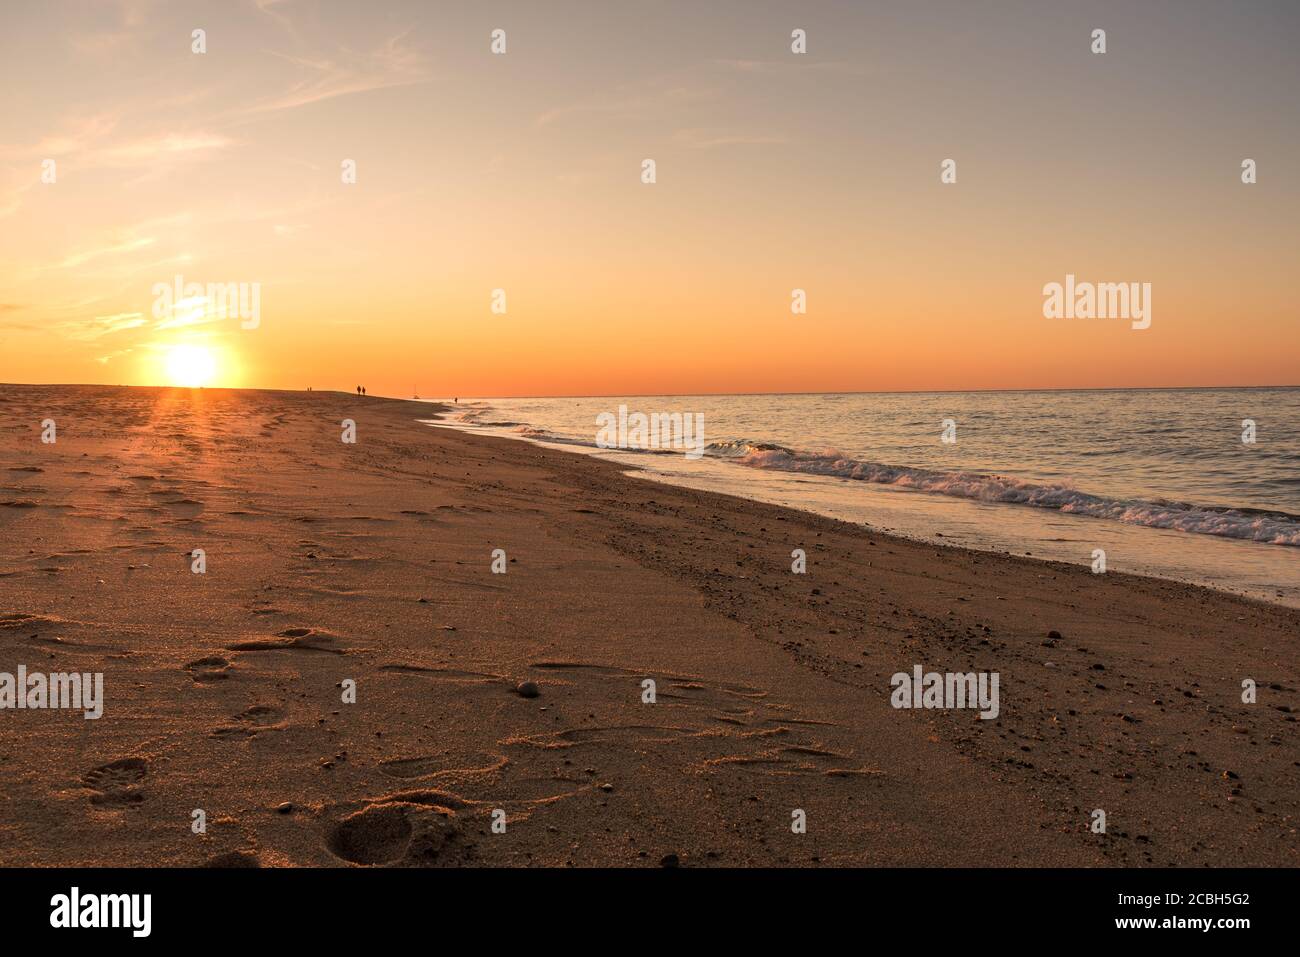 Sonnenuntergang über einem schönen Sandstrand. Menschen, die am Strand entlang spazieren, sind in der Ferne sichtbar Stockfoto